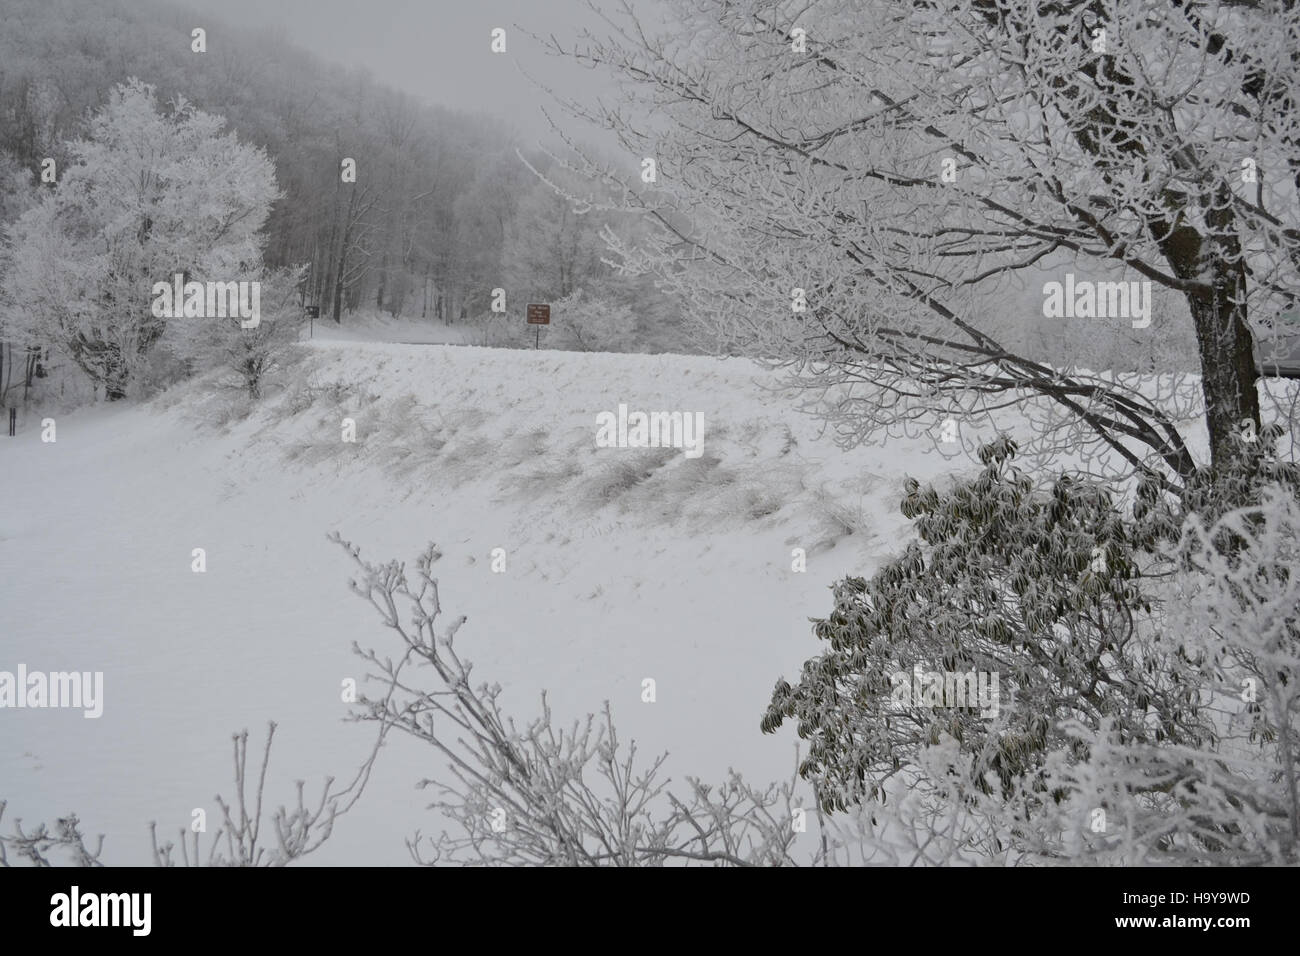 130571706@N07 16622130066 Scène d'hiver le long de la Blue Ridge Parkway Tye River Gap MP27 Banque D'Images